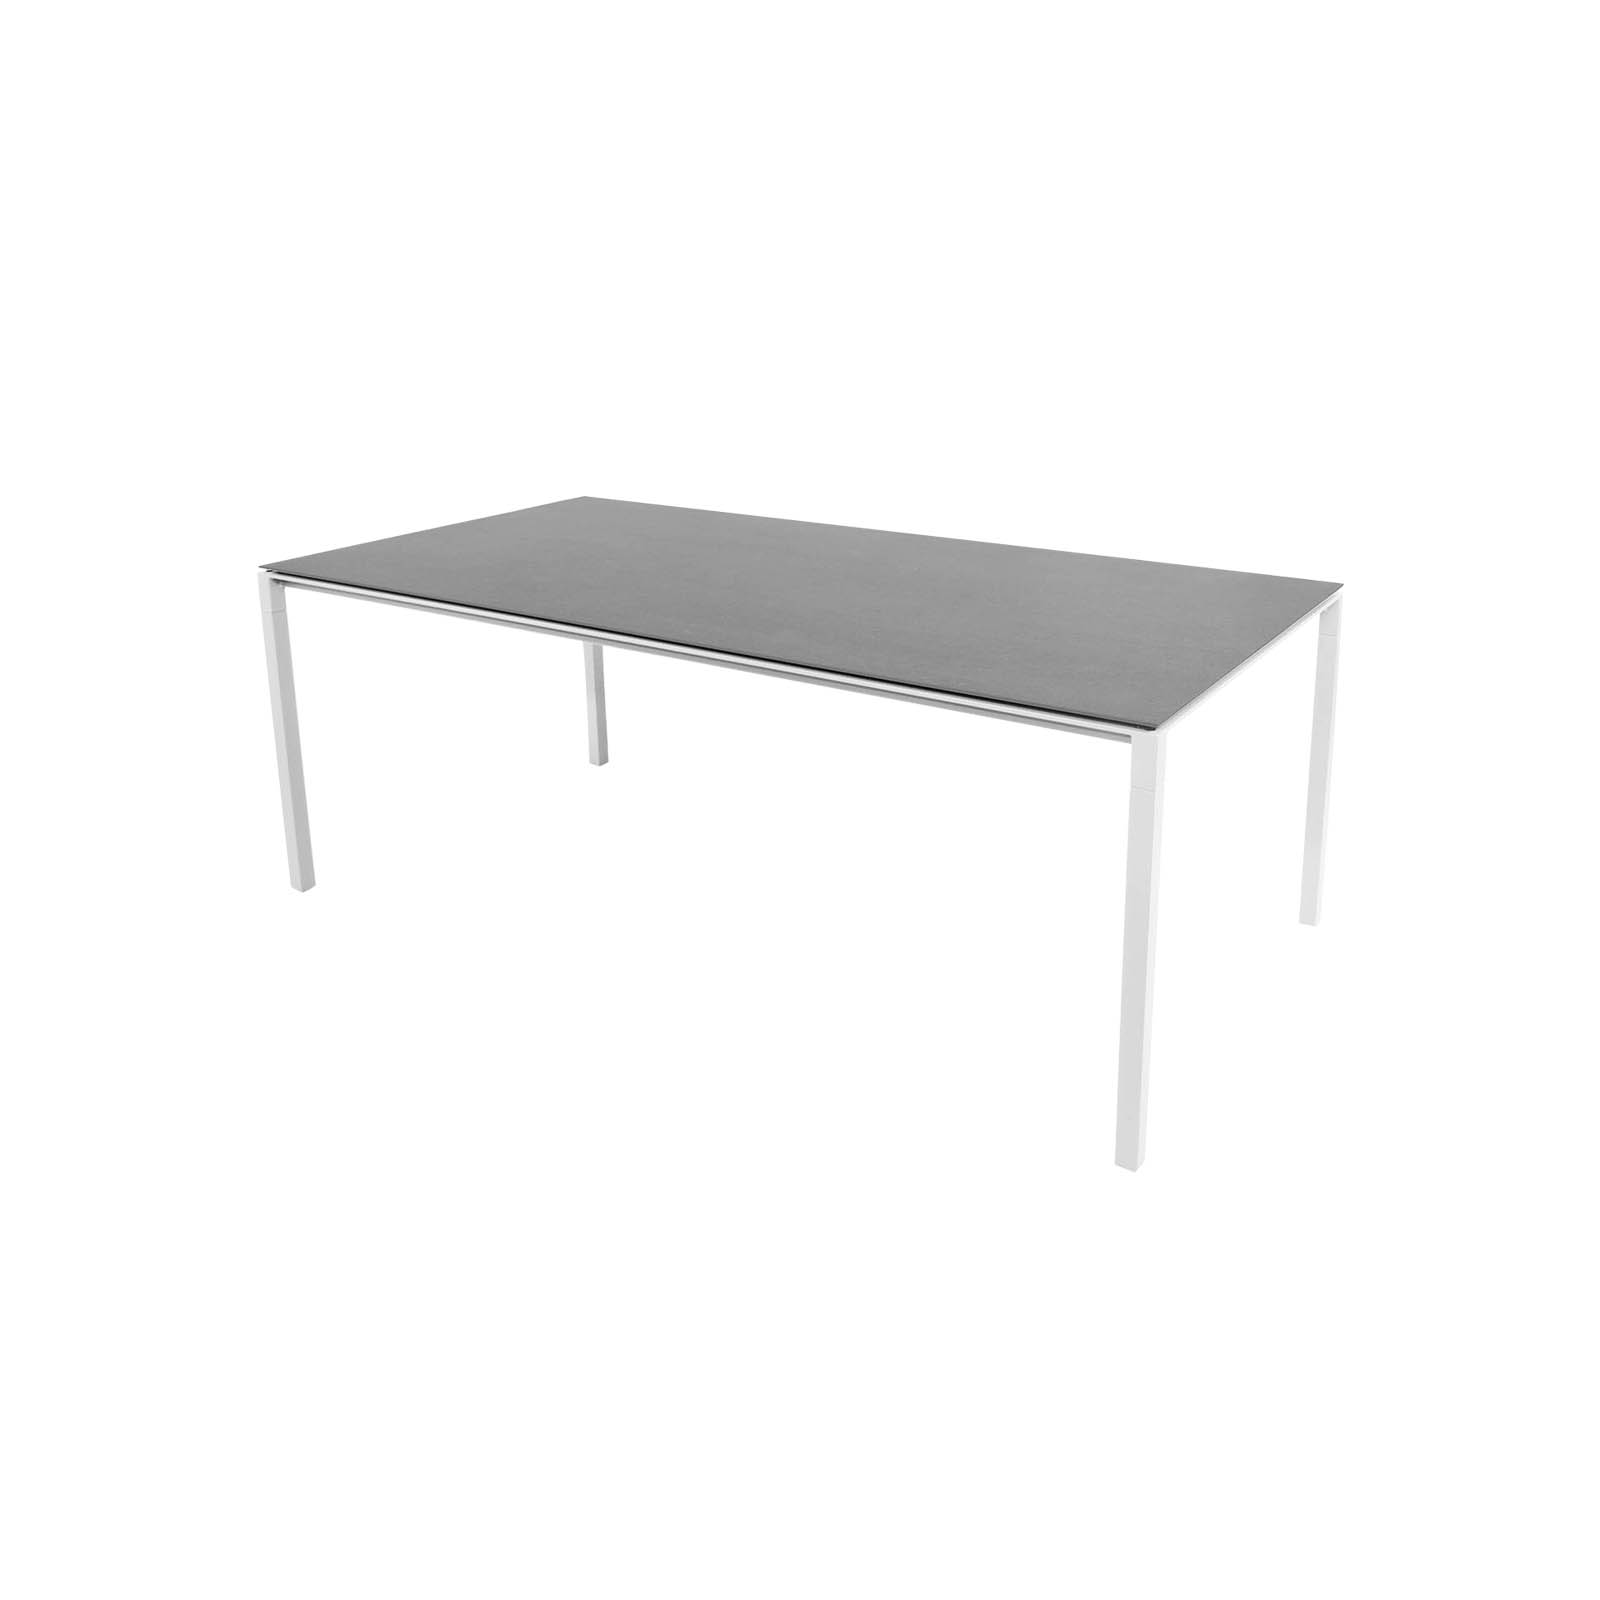 Tisch 200x100 cm Pure aus Aluminium in White mit Tischplatte aus Ceramic in Basalt